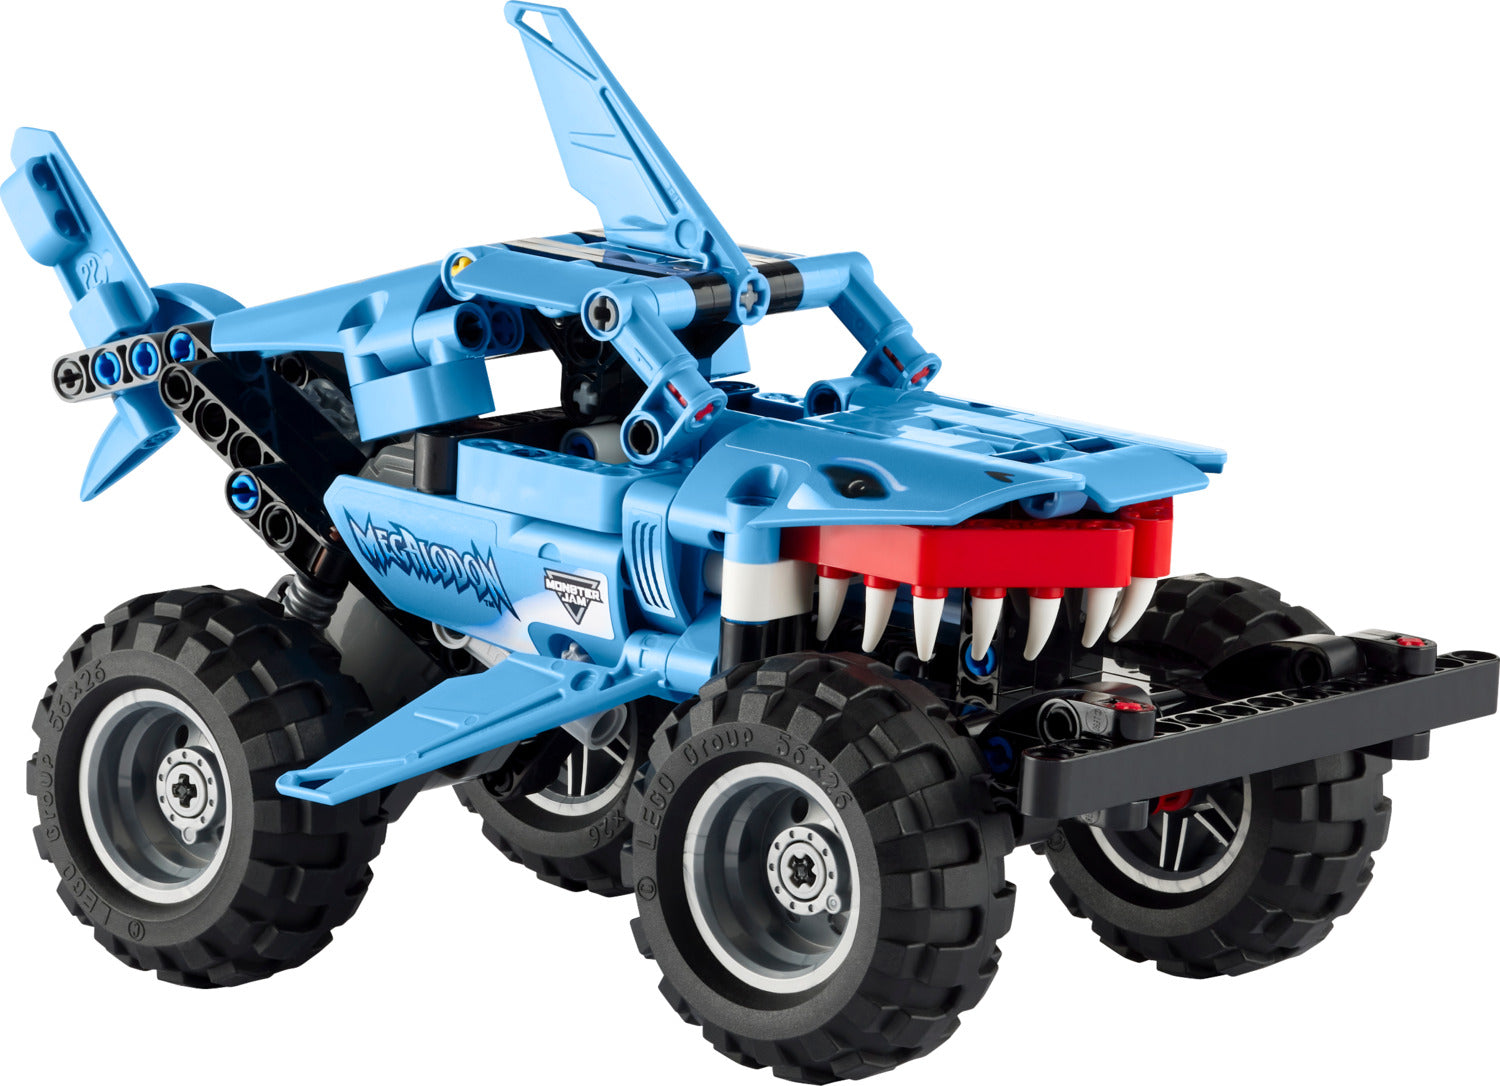 LEGO® Technic: Monster Jam Megalodon